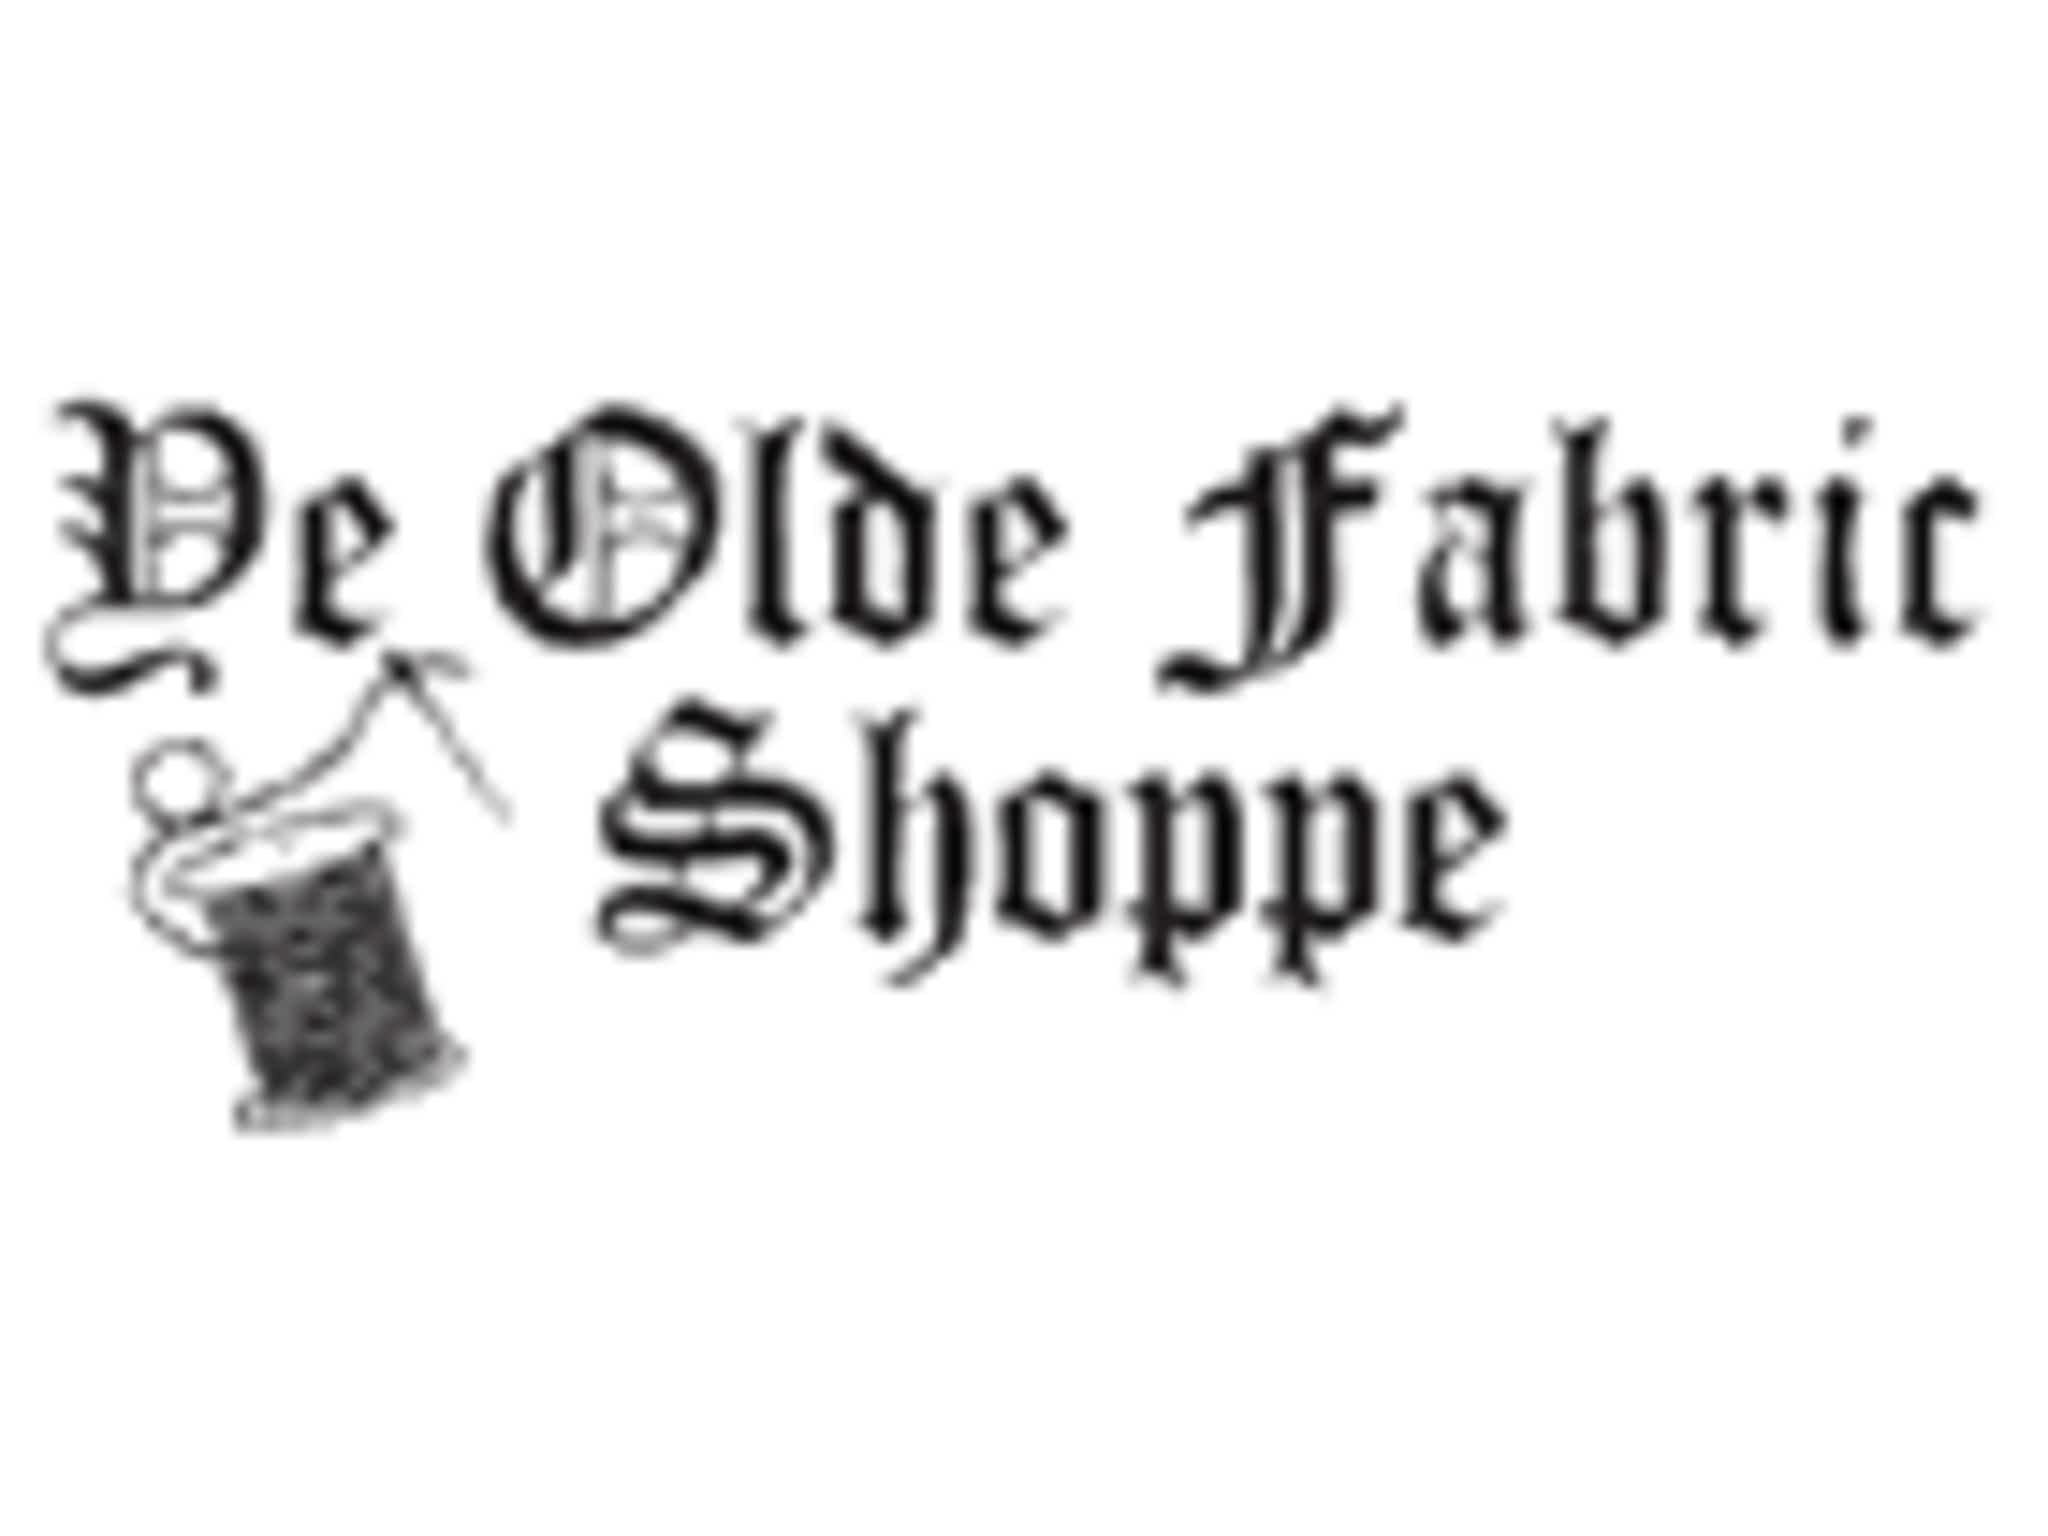 photo Ye Olde Fabric Shoppe